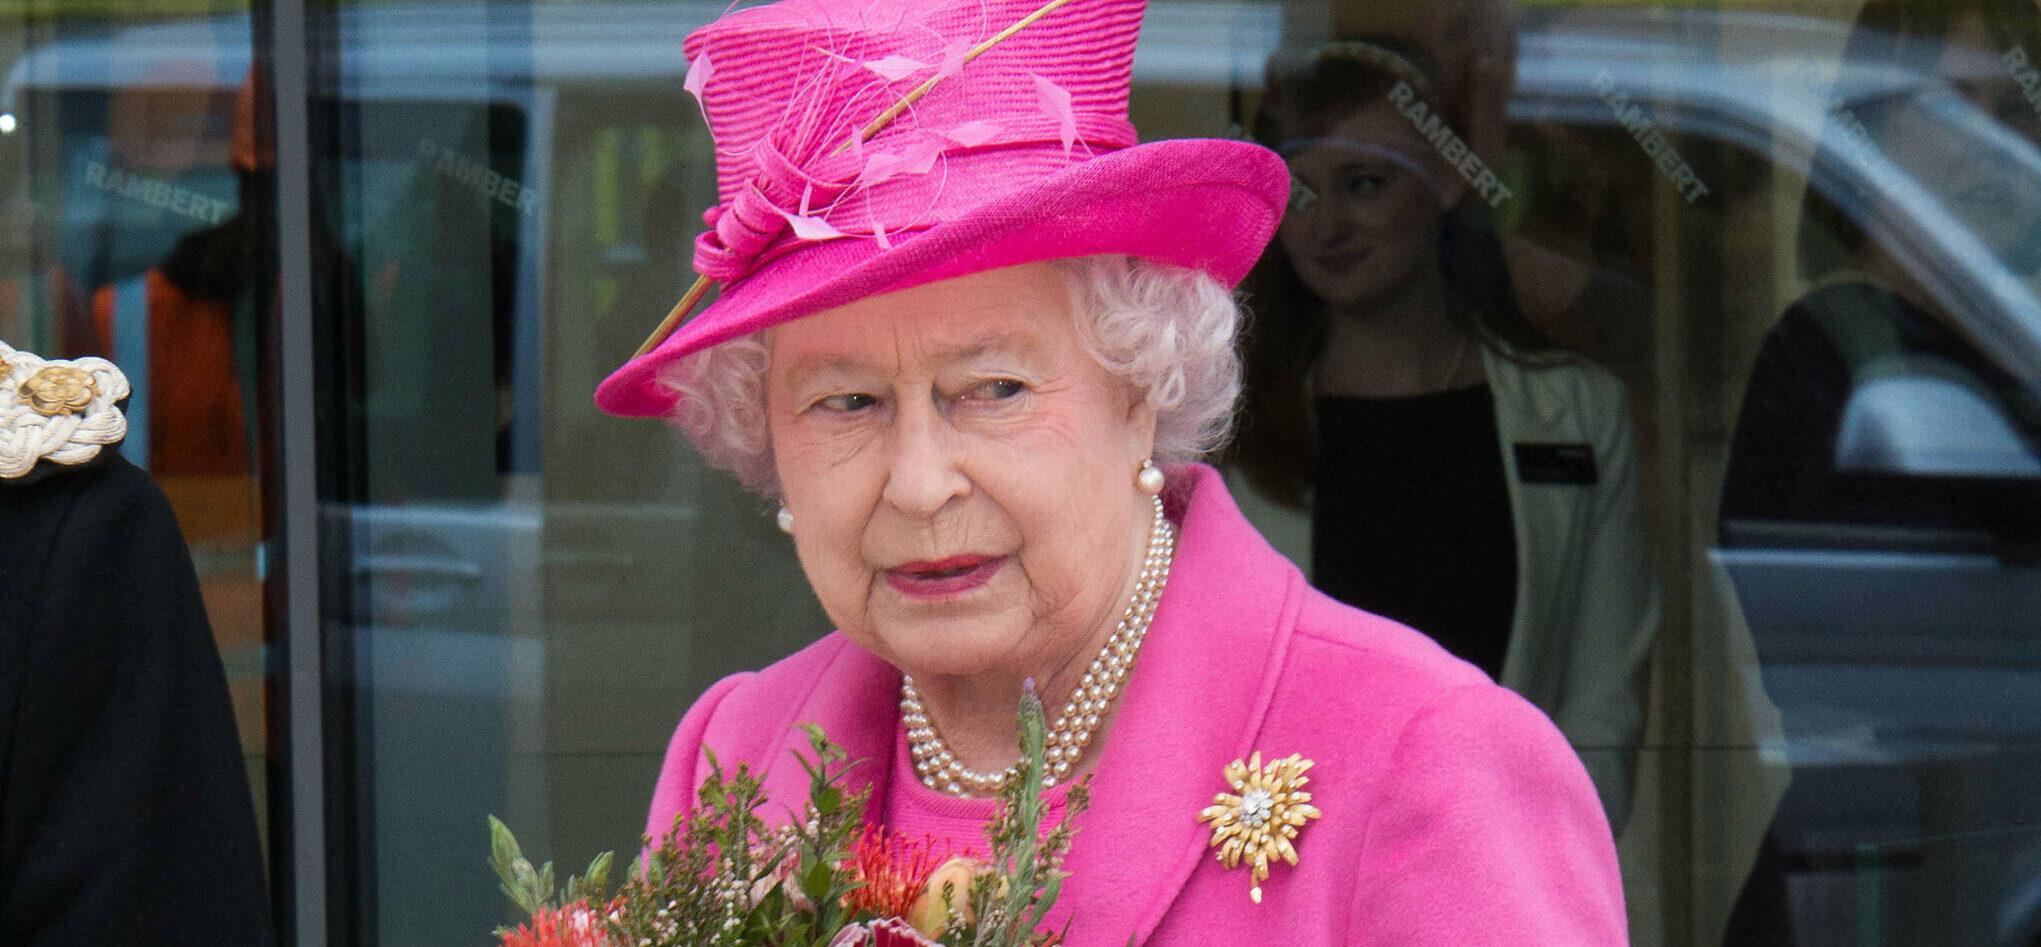 Sharon Stone Recalls Meeting Queen Elizabeth II: ‘I Experienced Her’ 